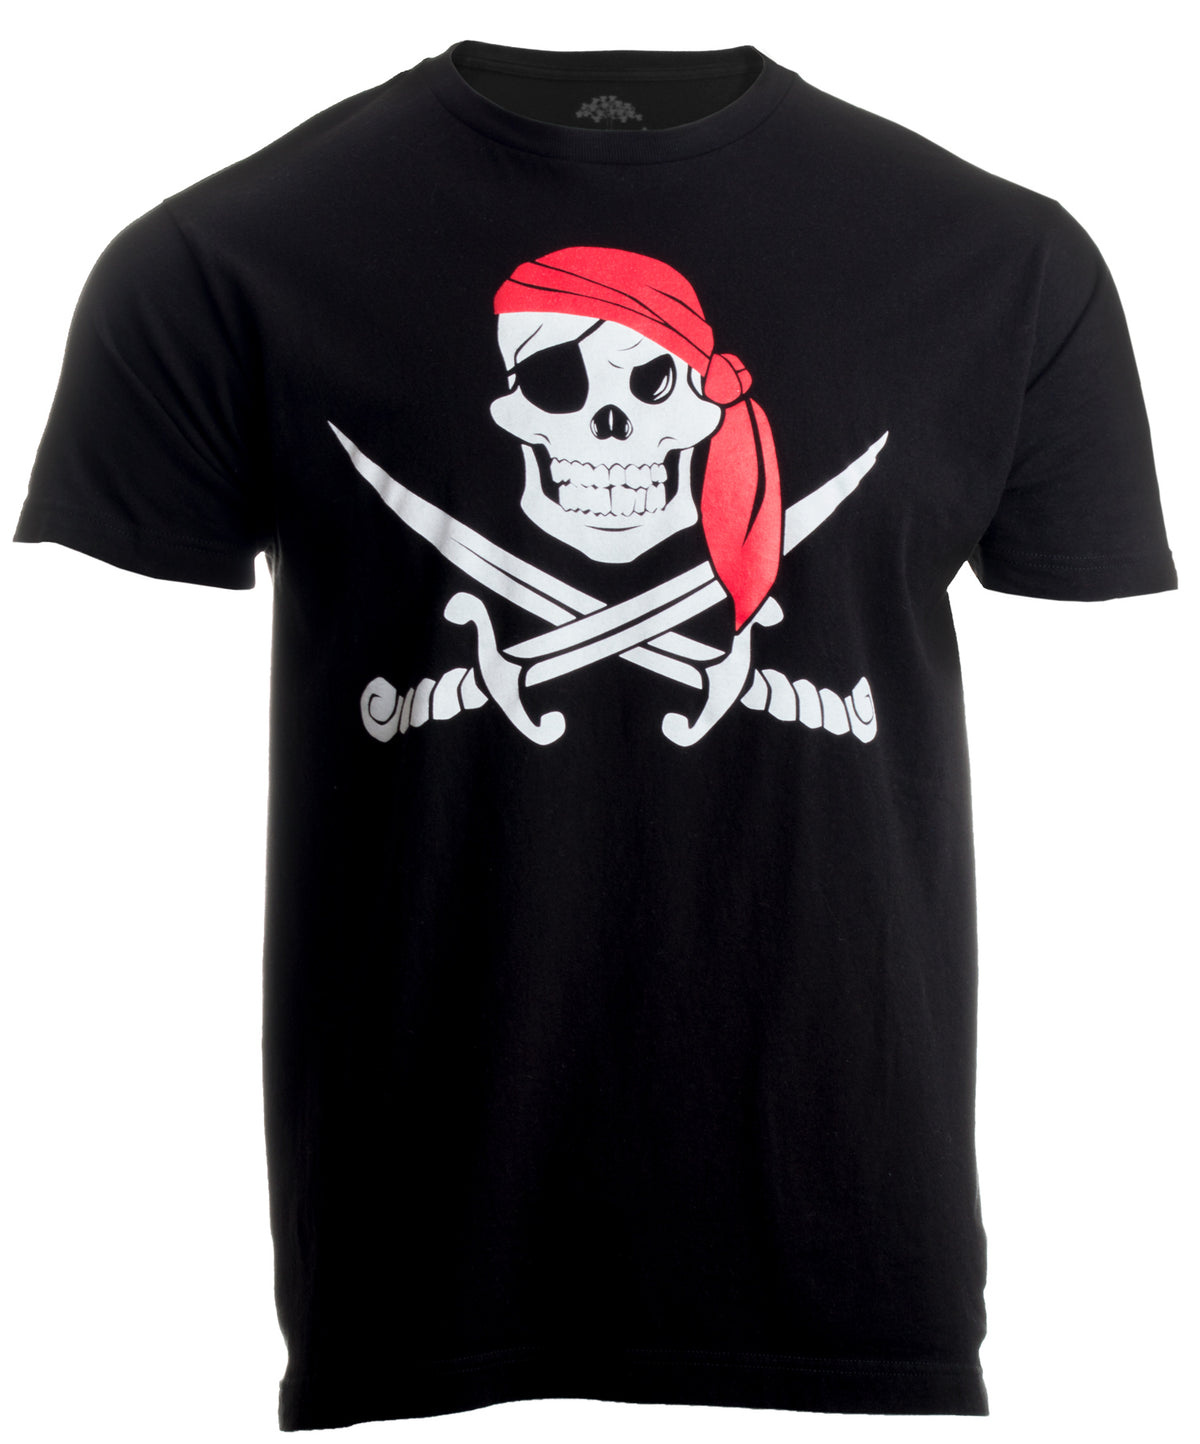 Jolly Roger Pirate Flag | Skull & Crossbones Buccaneer Costume Unisex T-shirt